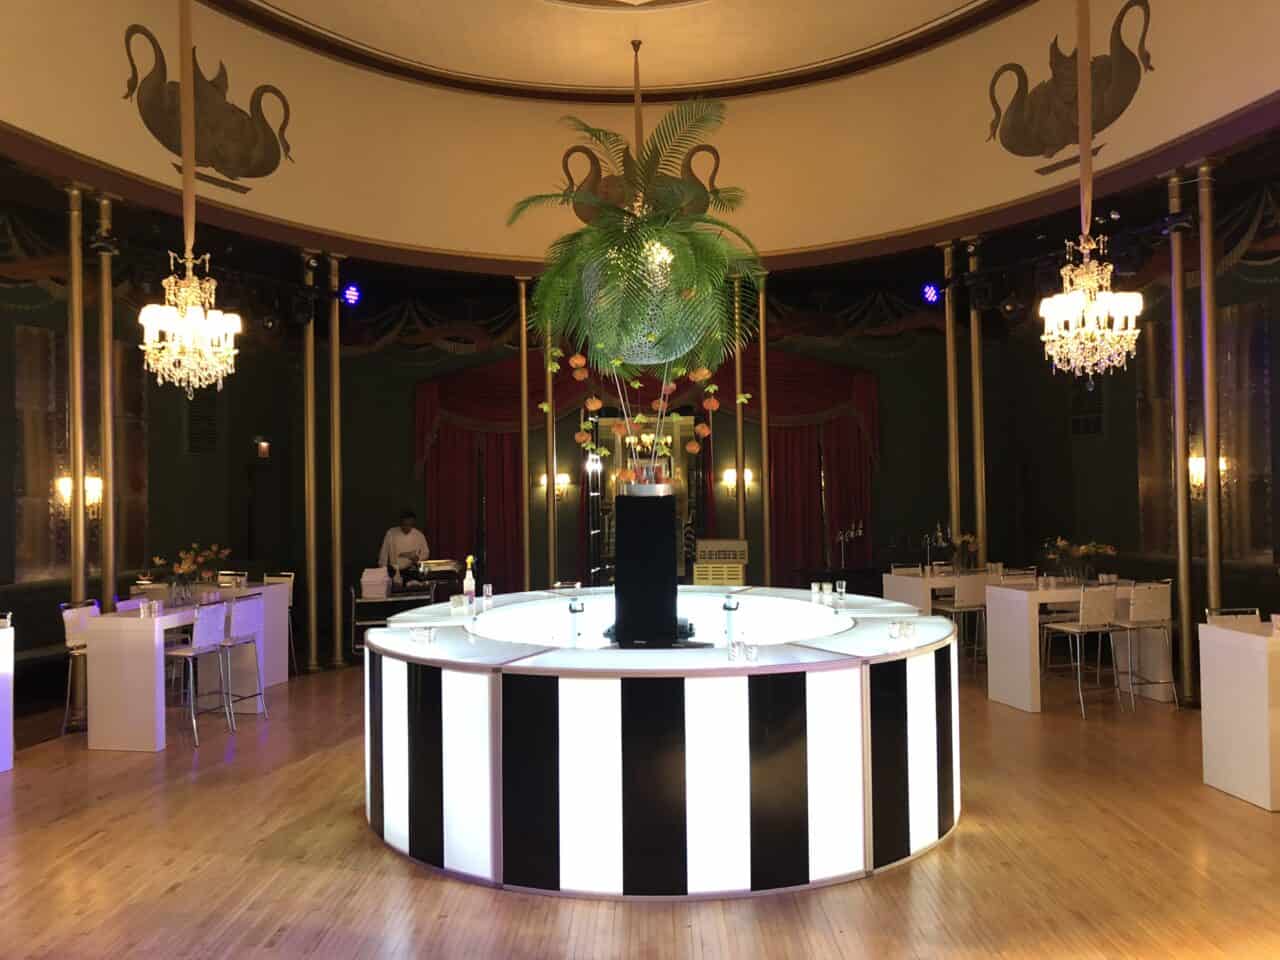 Illuminated Round Bar San Diego-Modern Event Rental